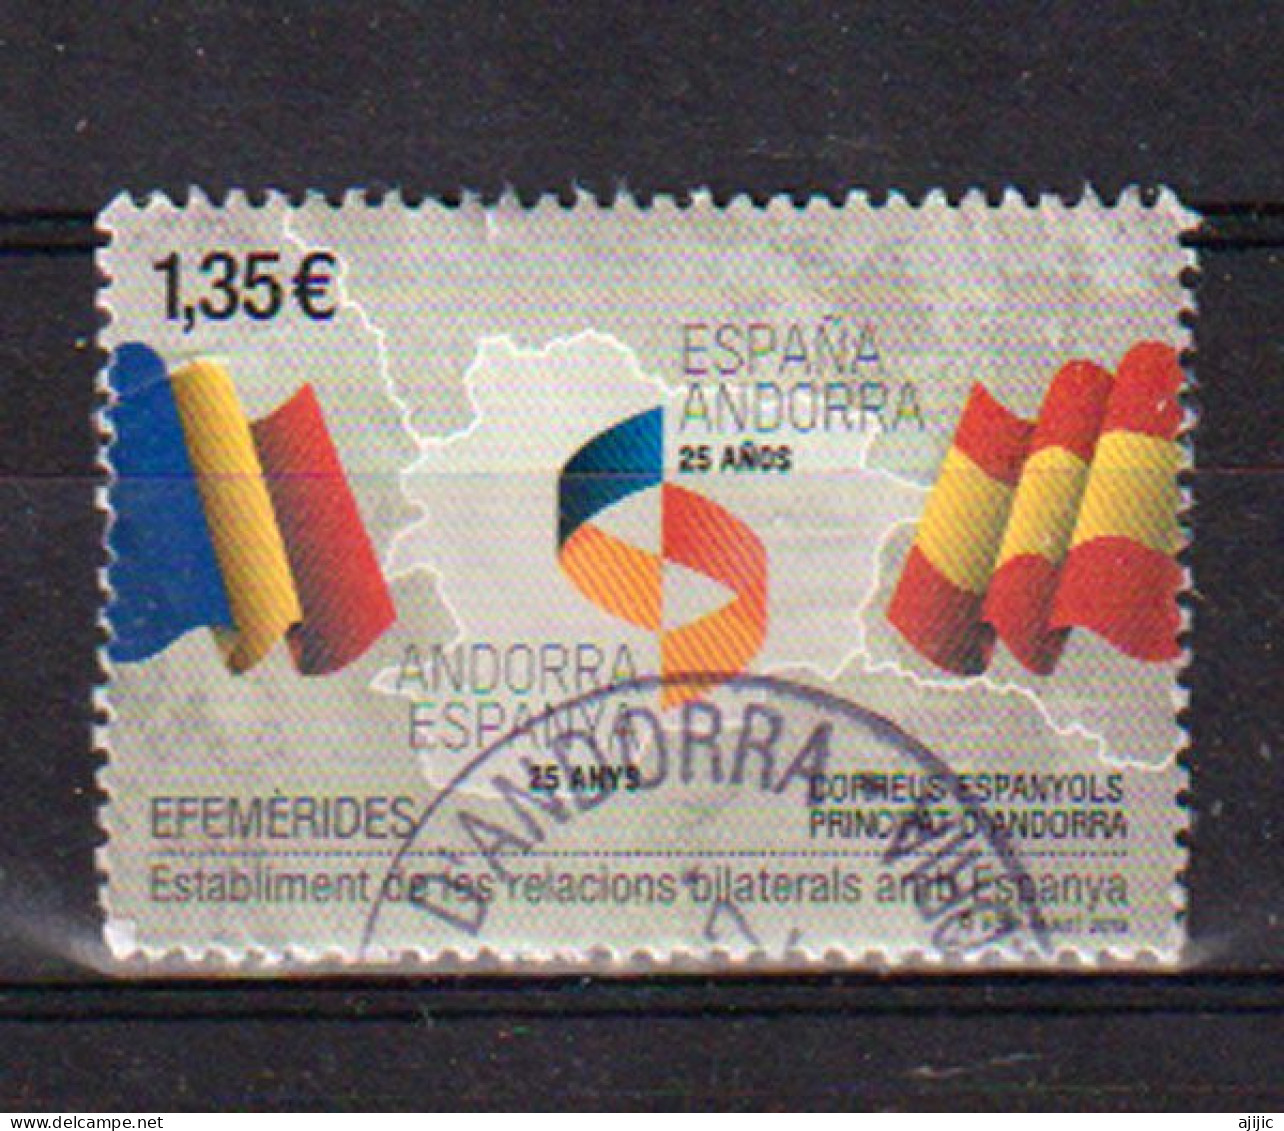 Emission Conjointe Espagne-Andorre (25 Ans De Relations Bilaterales) Timbre Oblitéré, 1 ère Qualité 2018 - Used Stamps